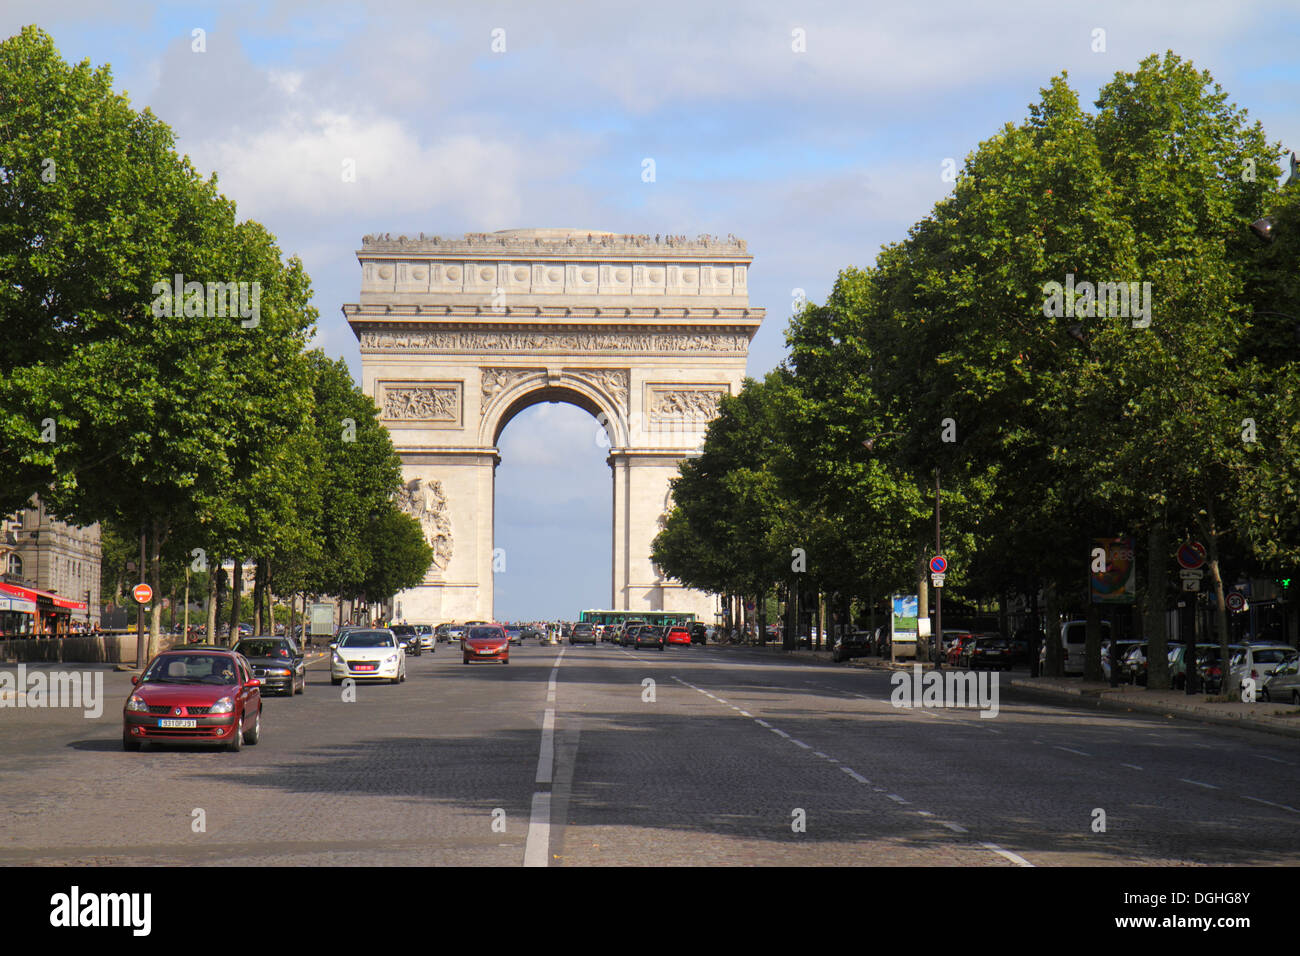 Paris France,16th 17th arrondissement,Avenue de la Grande Armée,Arc de Triomphe,Pace Charles de Gaulle,memorial,traffic,France130818111 Stock Photo